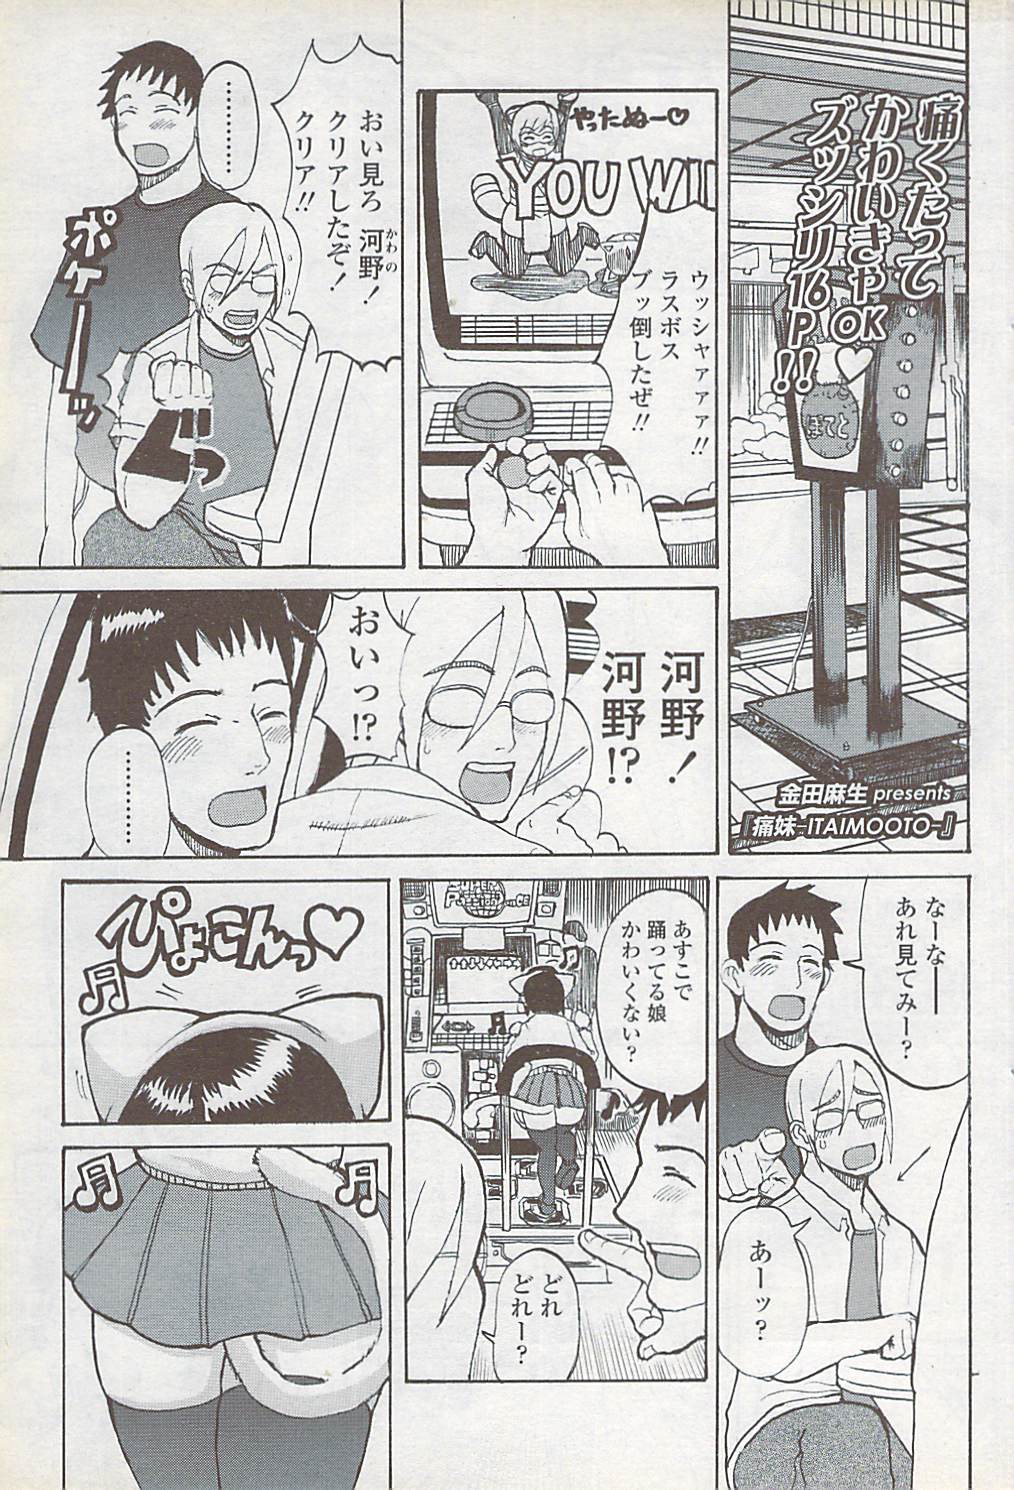 Comic ChoiS 2007-10 Vol. 6 COMIC ちょいS! 2007年10月号 Vol.6